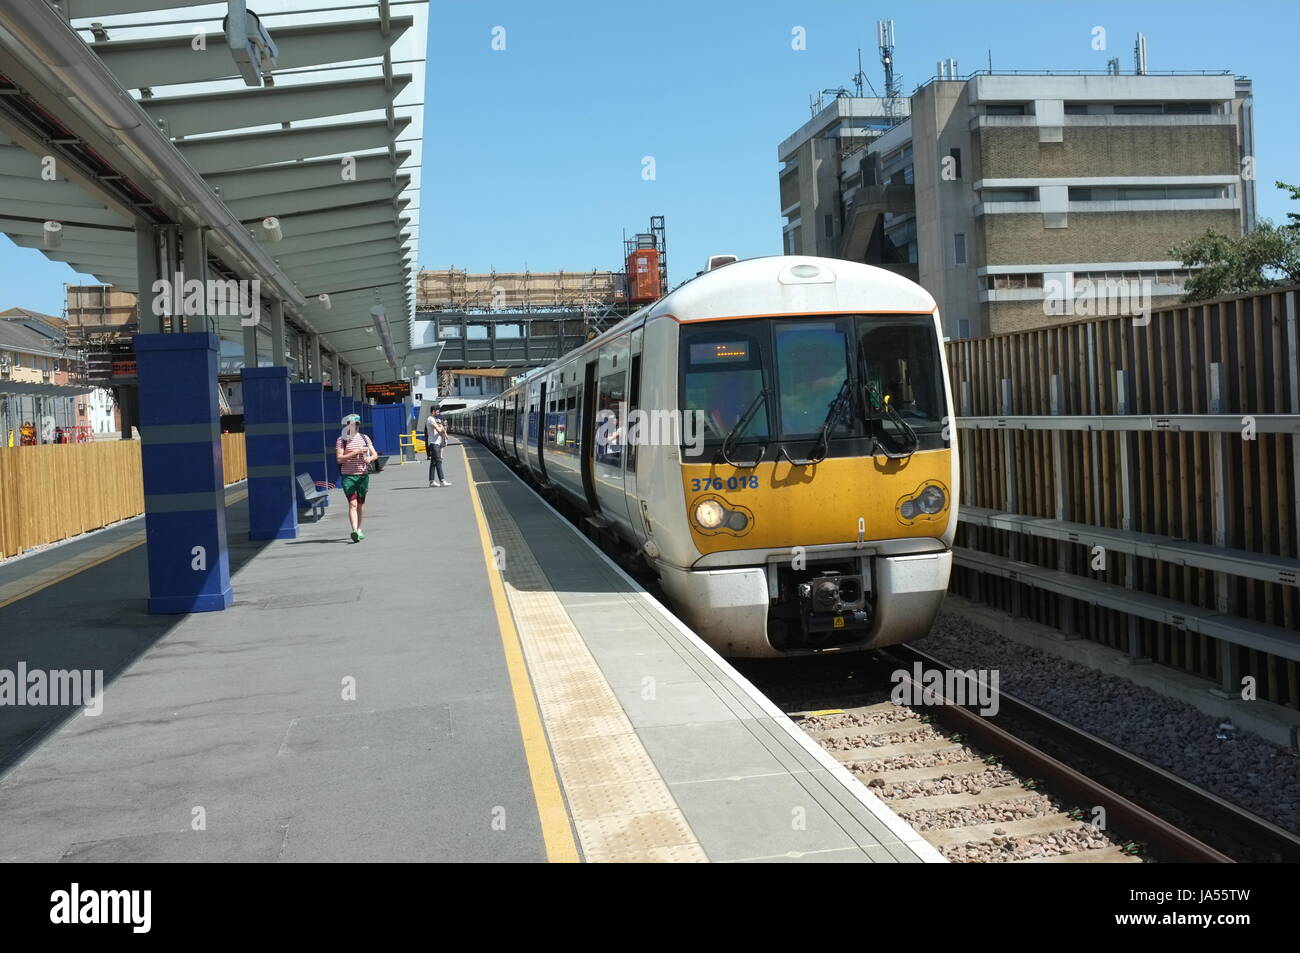 Elizabeth Linie (Crossrail) Bauarbeiten im Gange am Bahnhof von Abbey Wood. Süd-Ost-London, England, Vereinigtes Königreich. 25. Mai 2017. Stockfoto